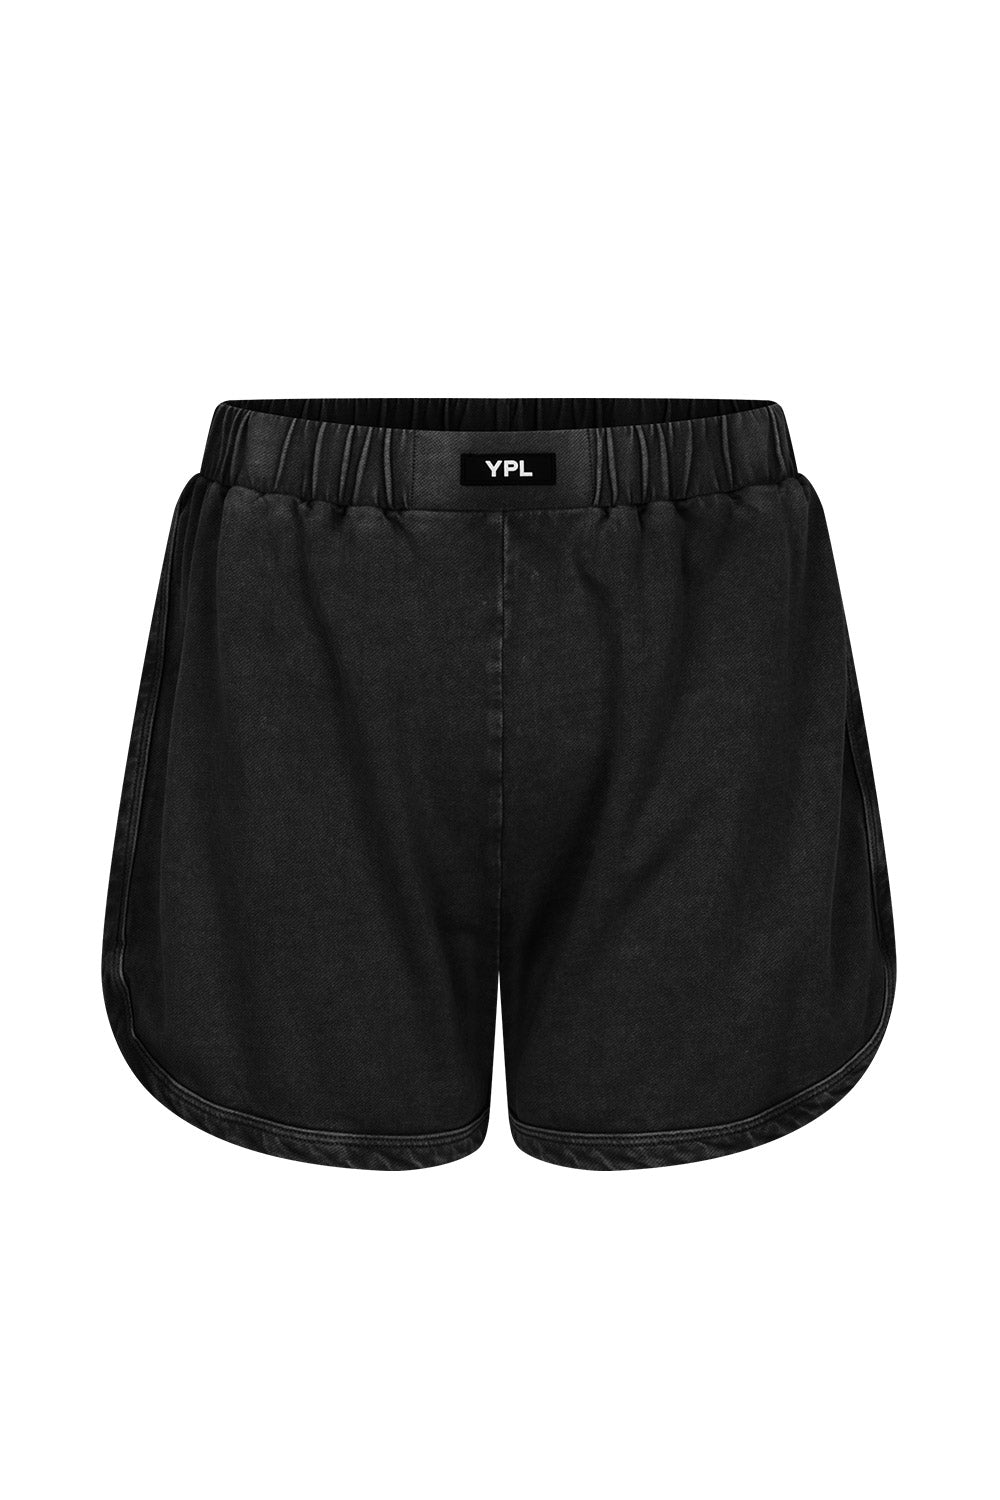 YPL Washed Shorts